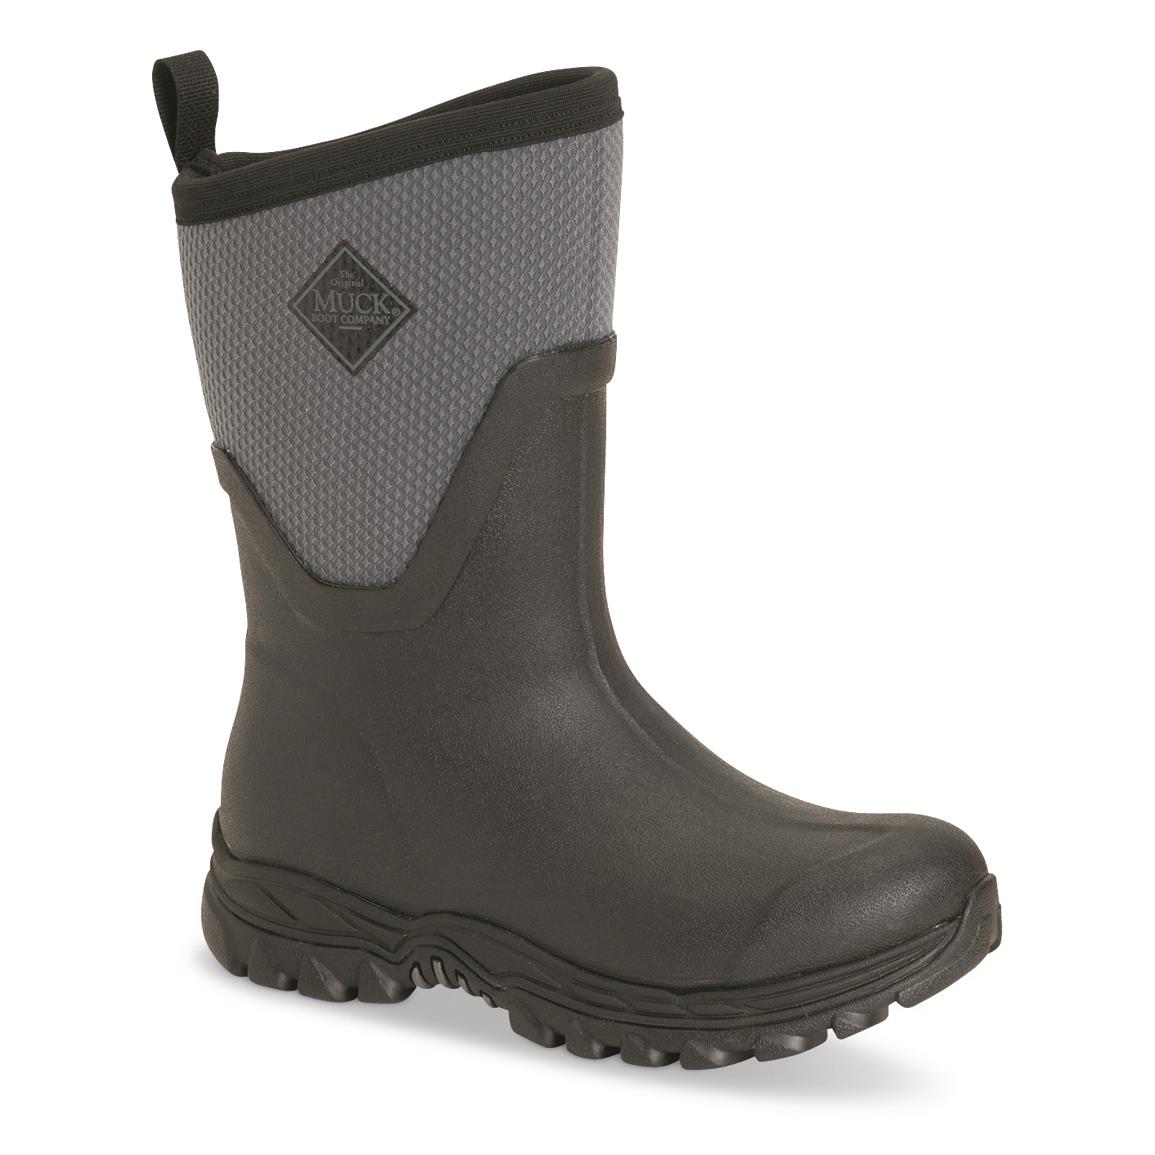 Muck Women's Arctic Sport II Mid Waterproof Insulated Boots, Black/gray